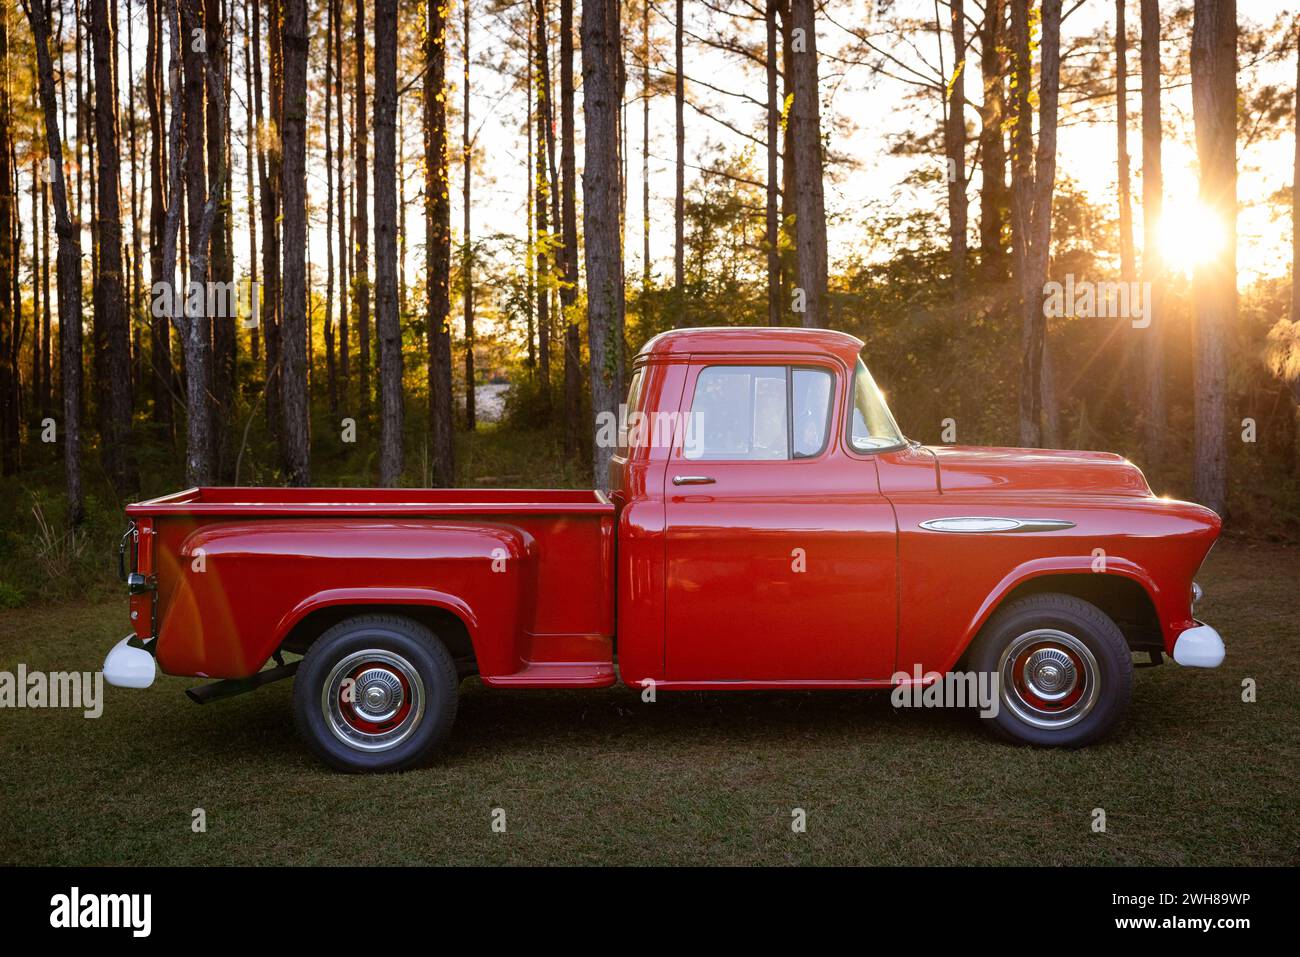 Una vieja camioneta americana retro clásica roja estacionada fuera en el país Foto de stock